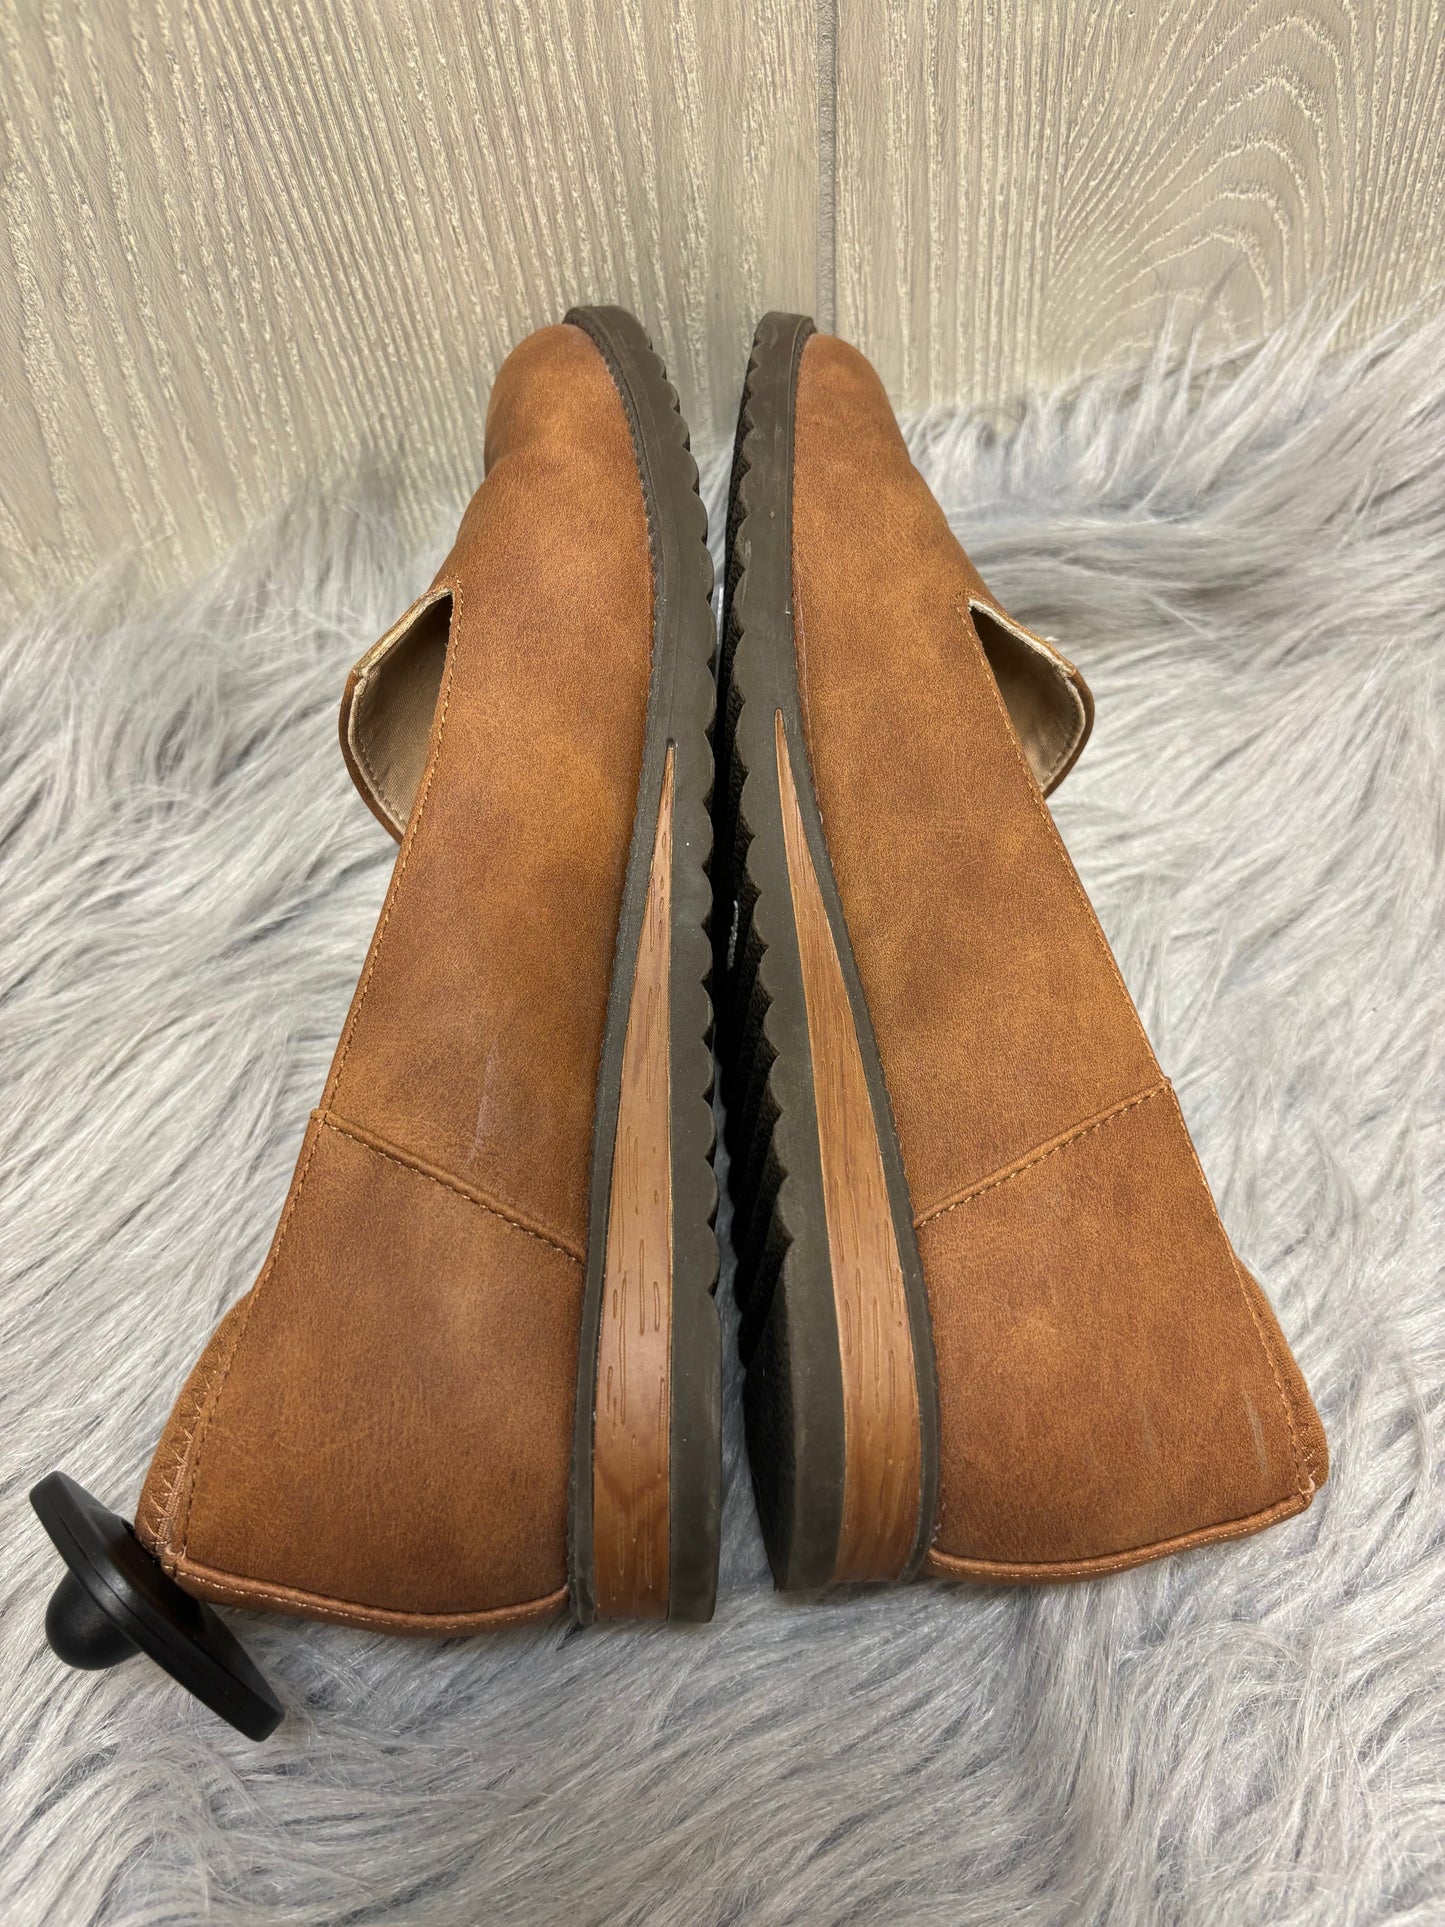 Brown Shoes Flats Dr Scholls, Size 7